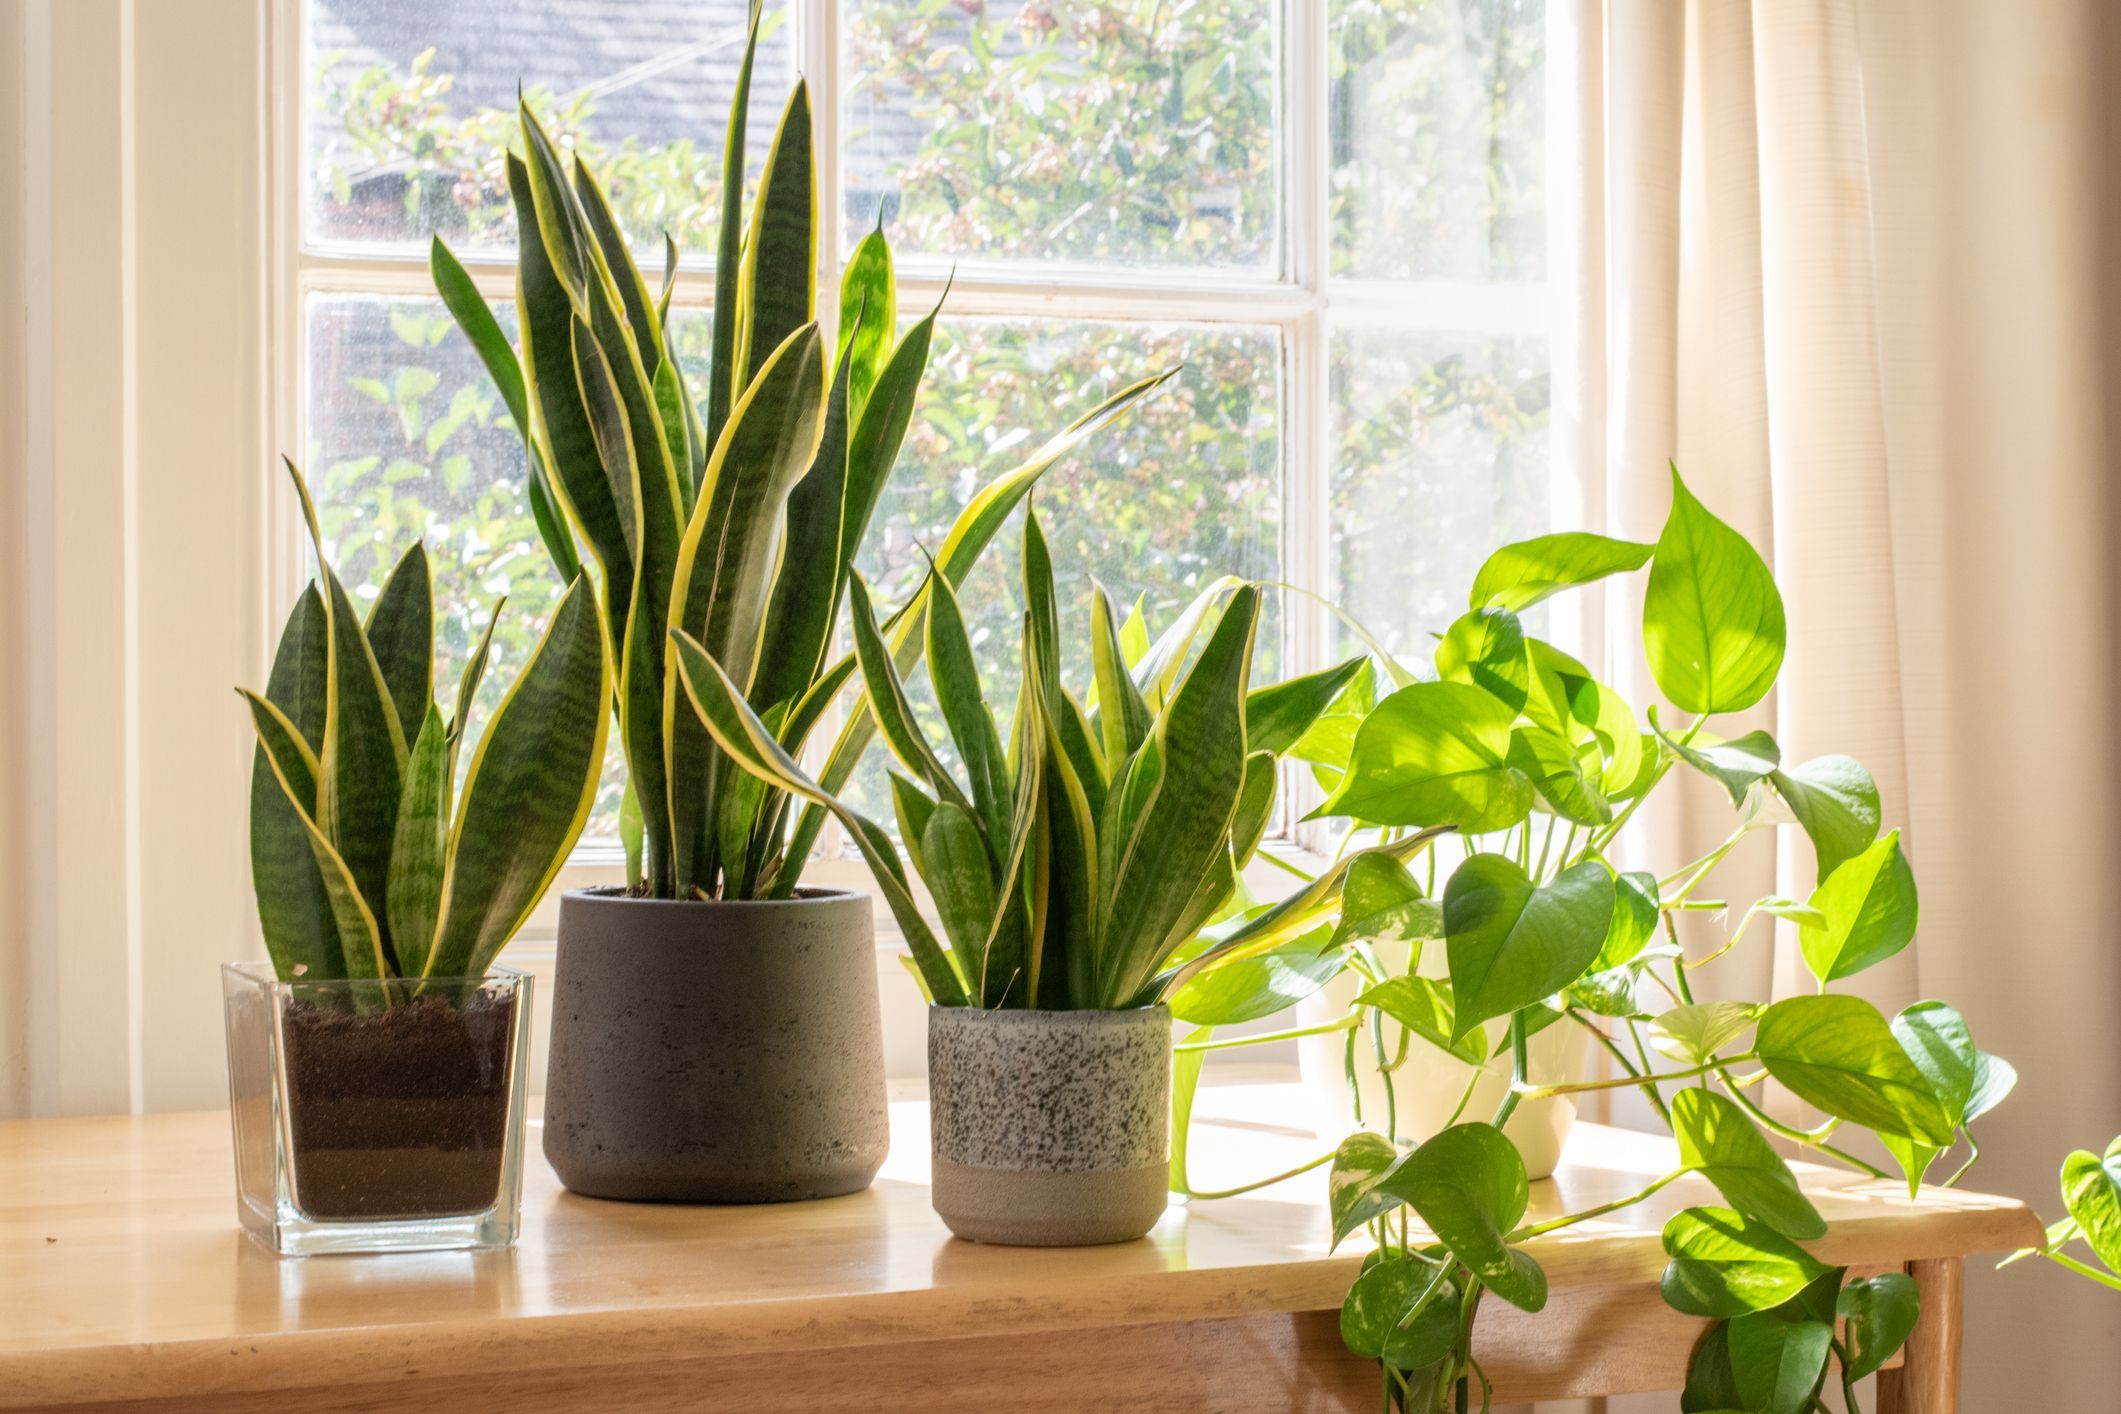 15 common houseplants to grow - best indoor plants